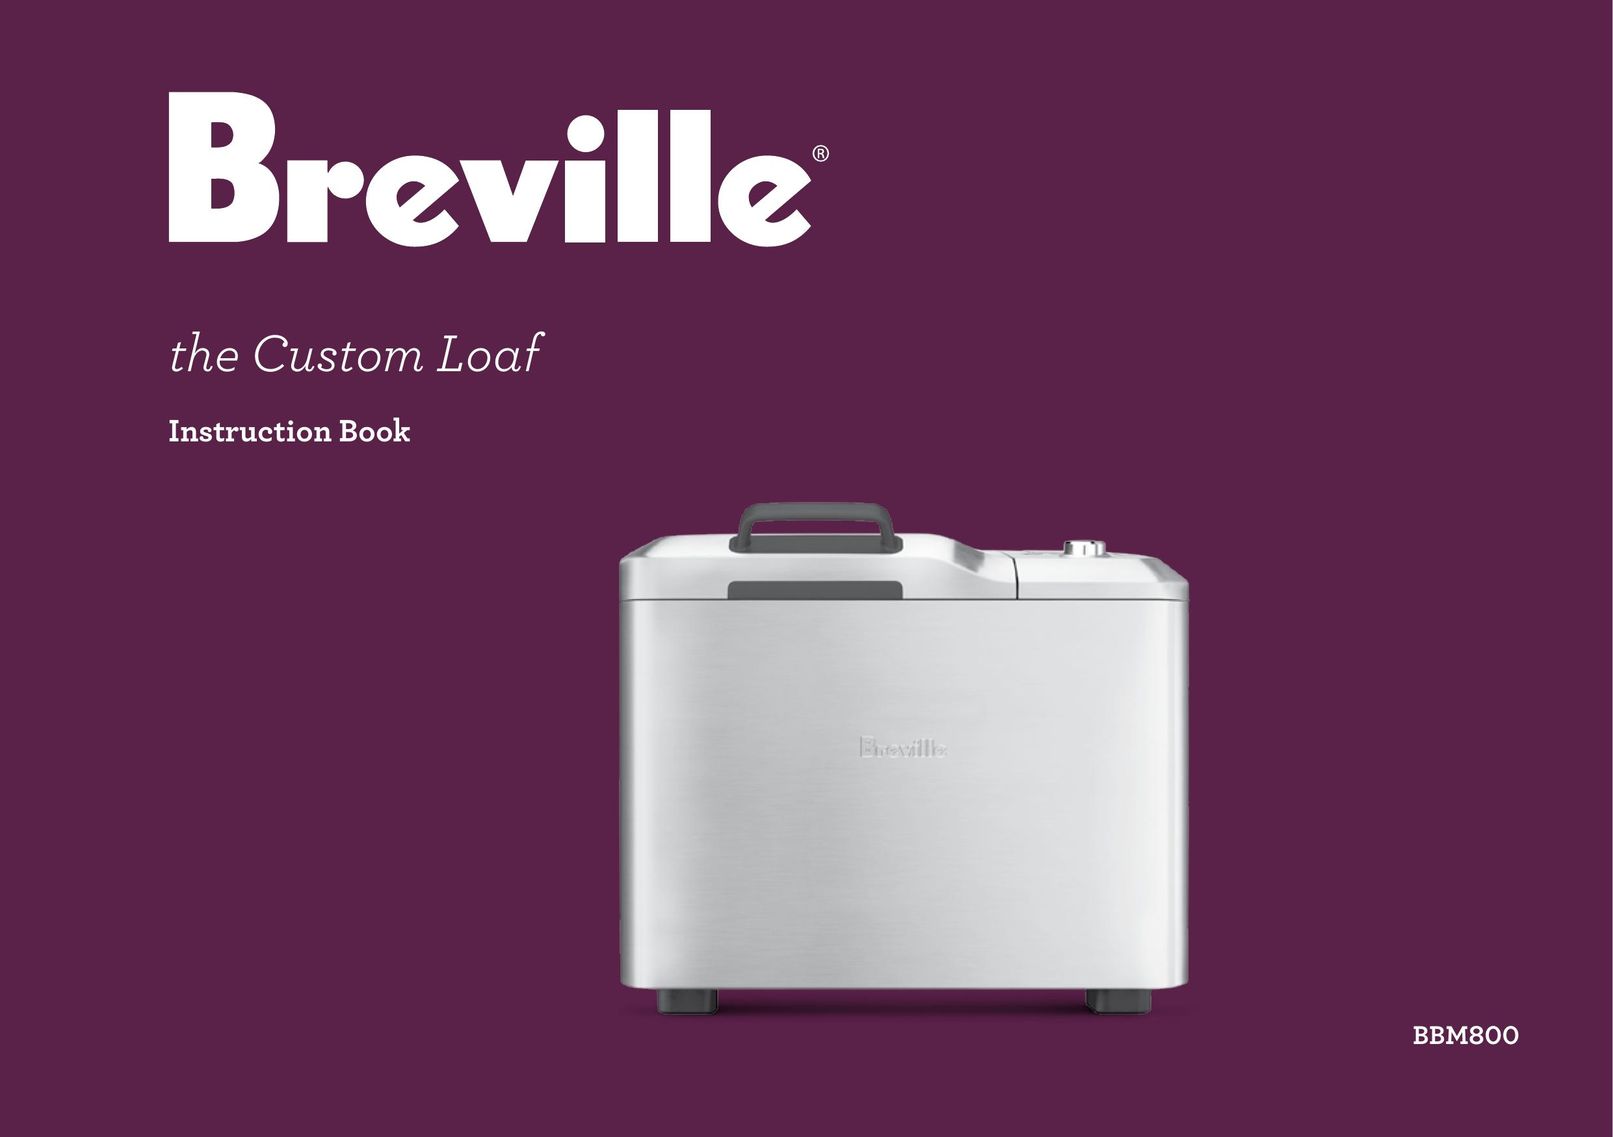 Breville BBM800 Bread Maker User Manual